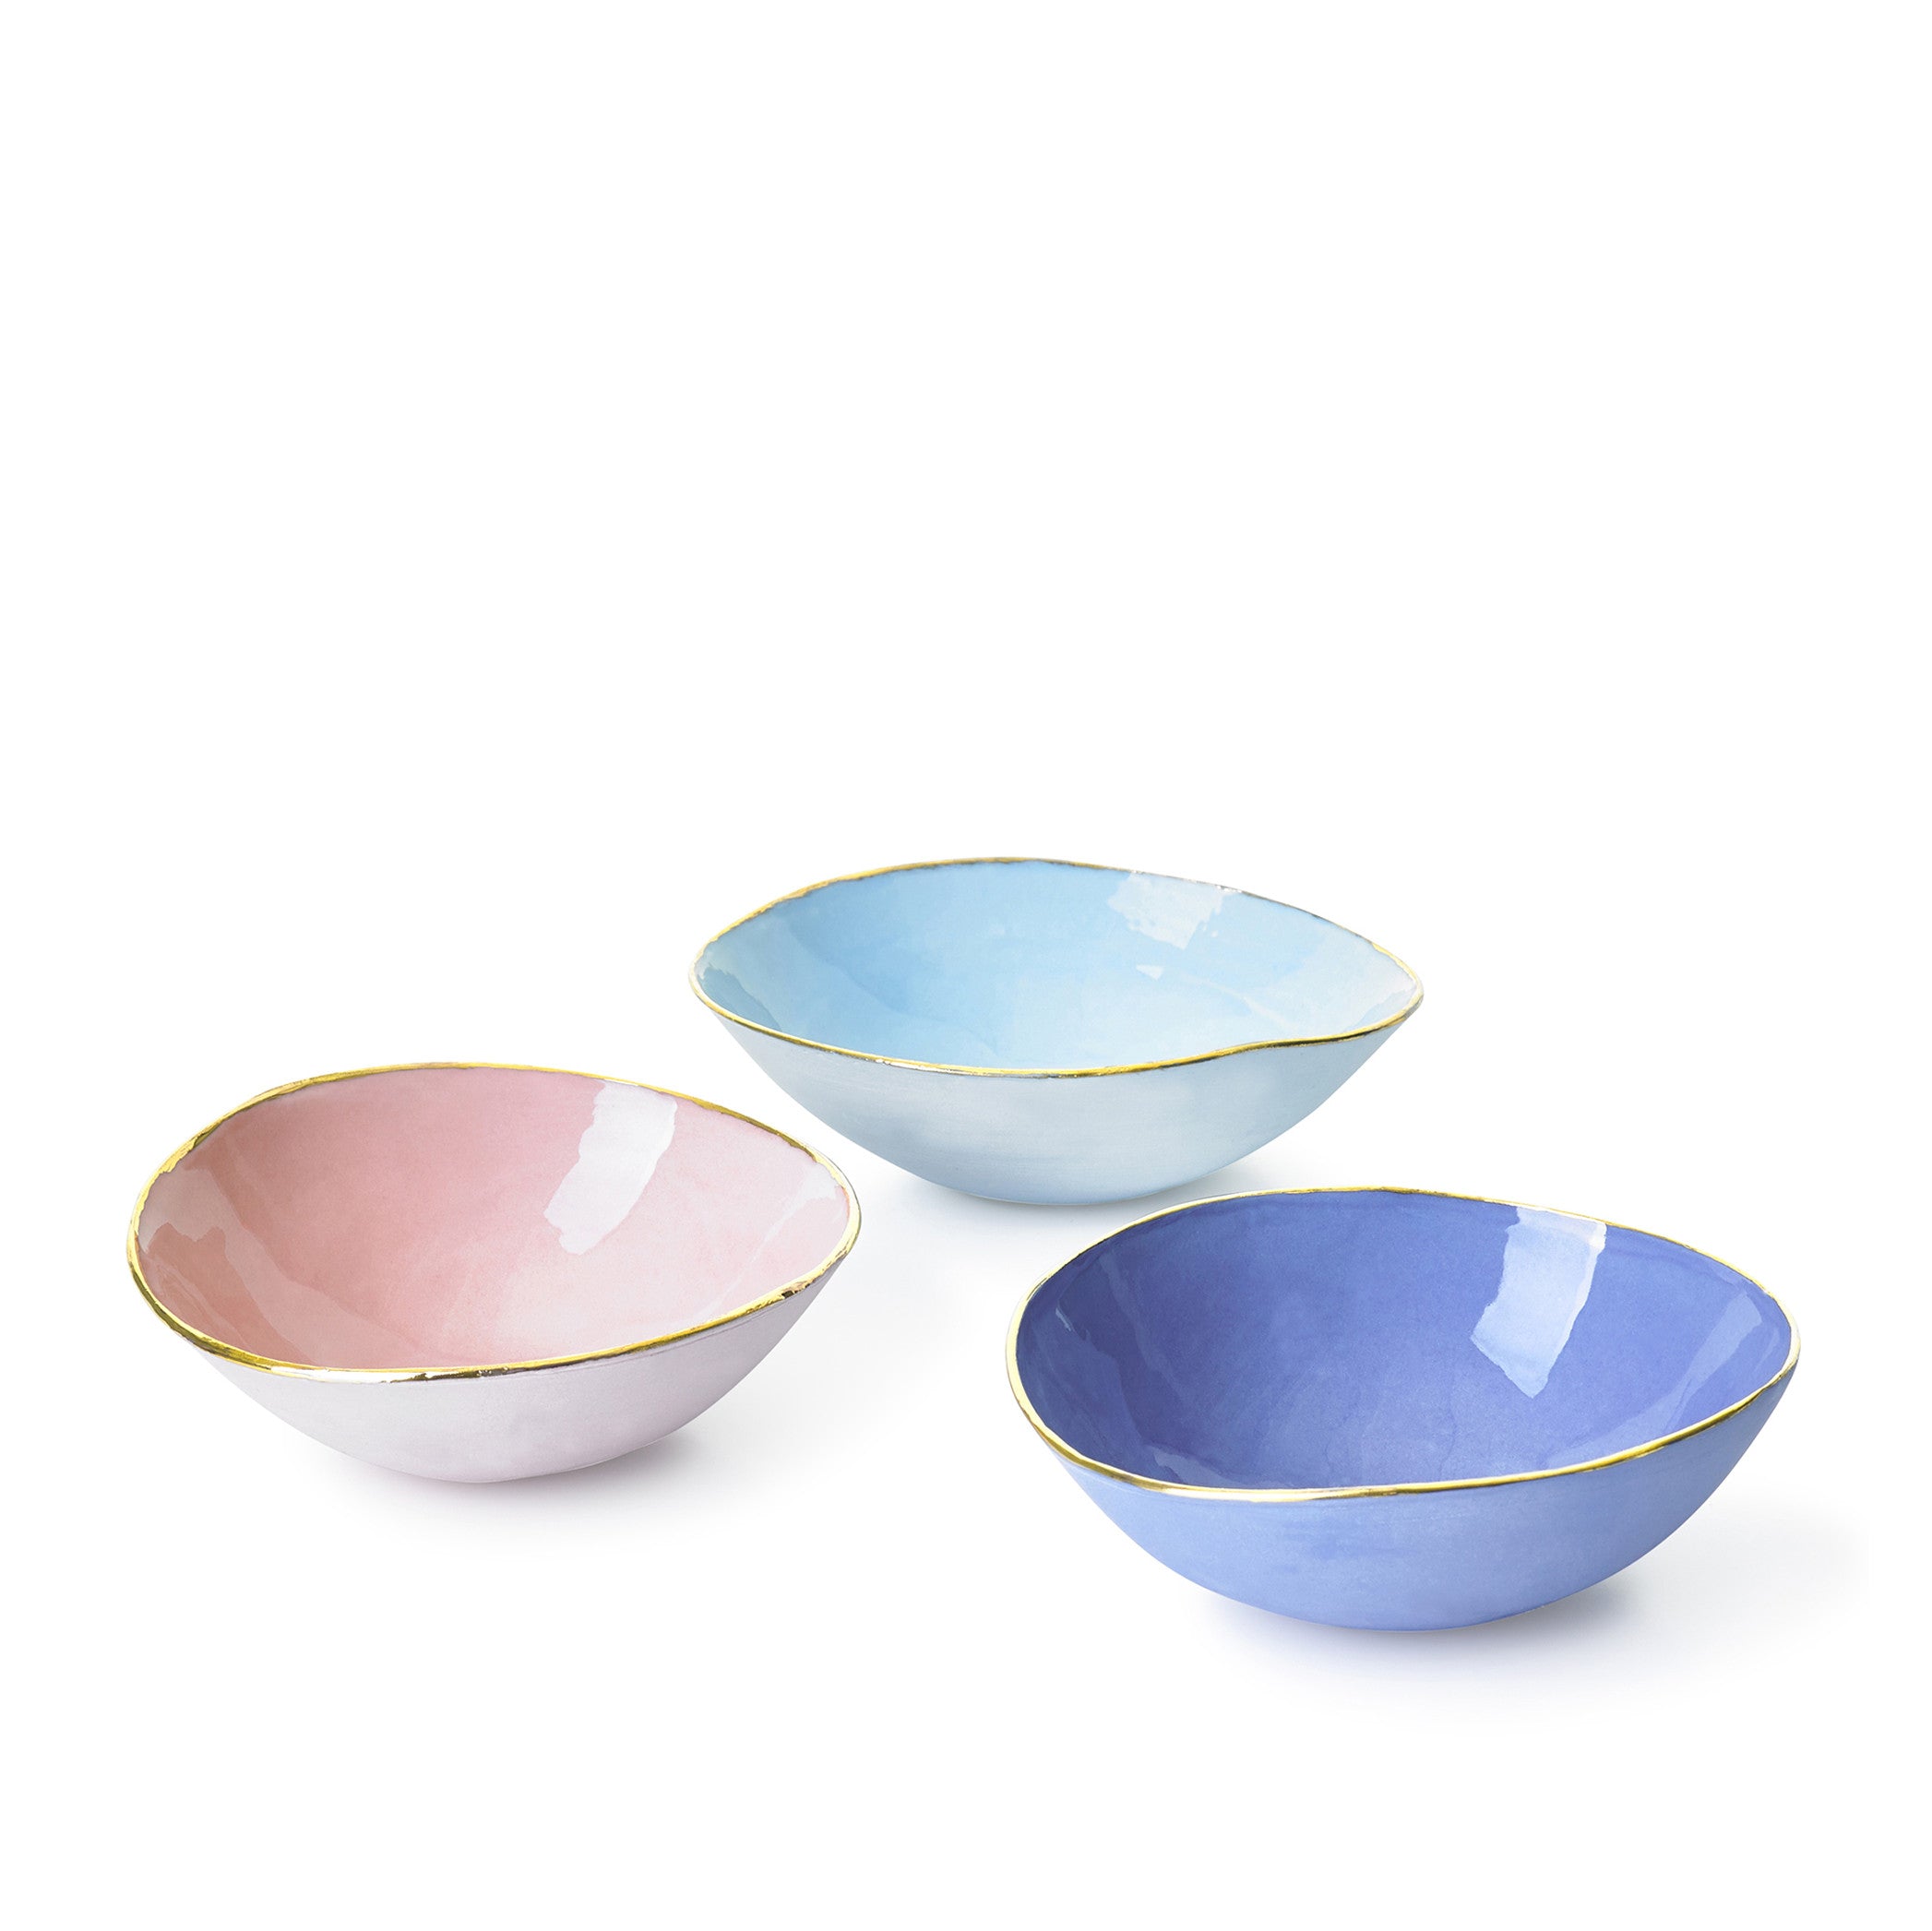 Light Blue Ceramic Bowl with Gold Rim, 10cm